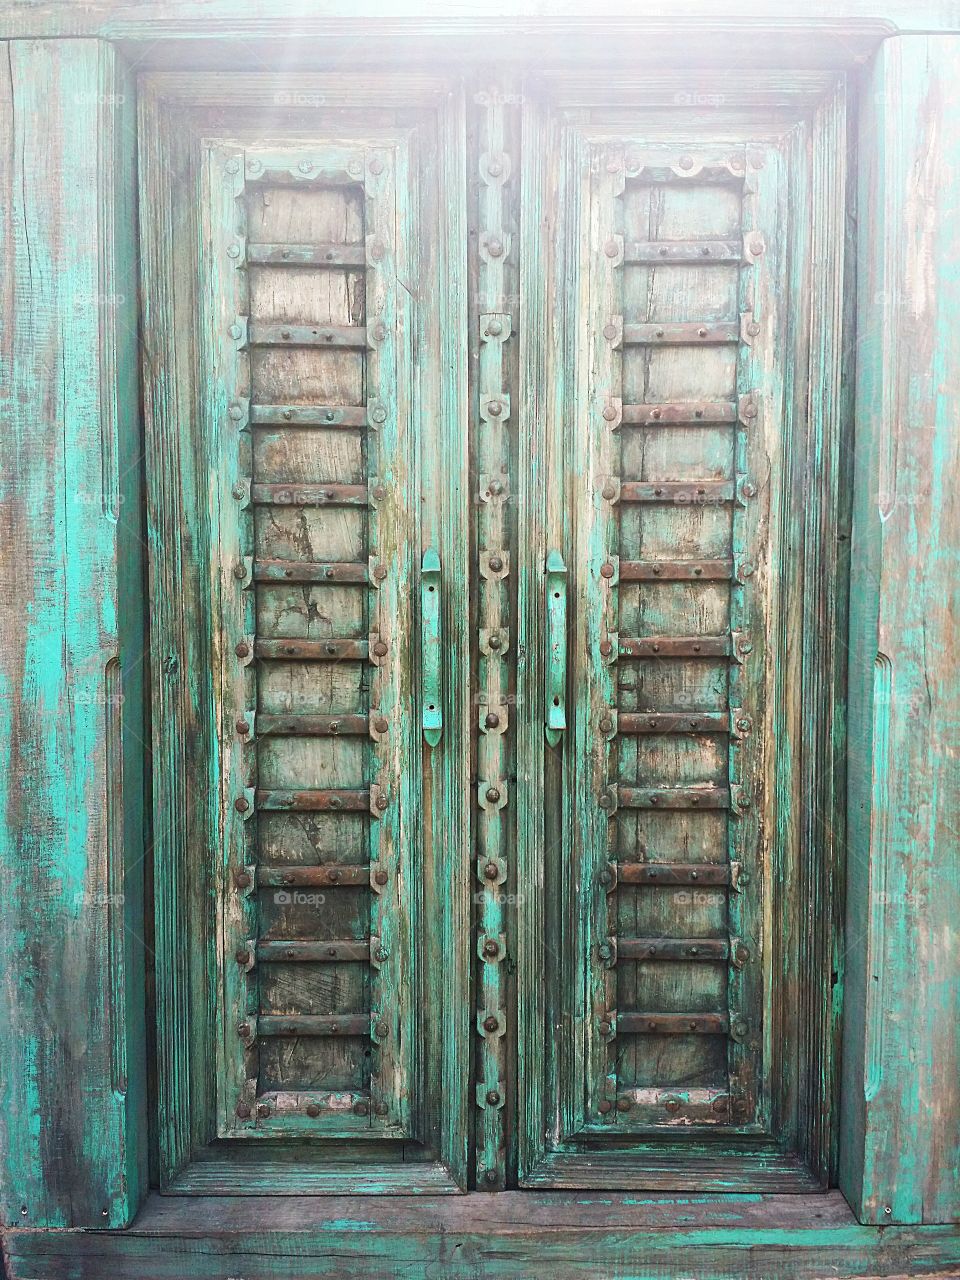 Old wooden door with sunlight.